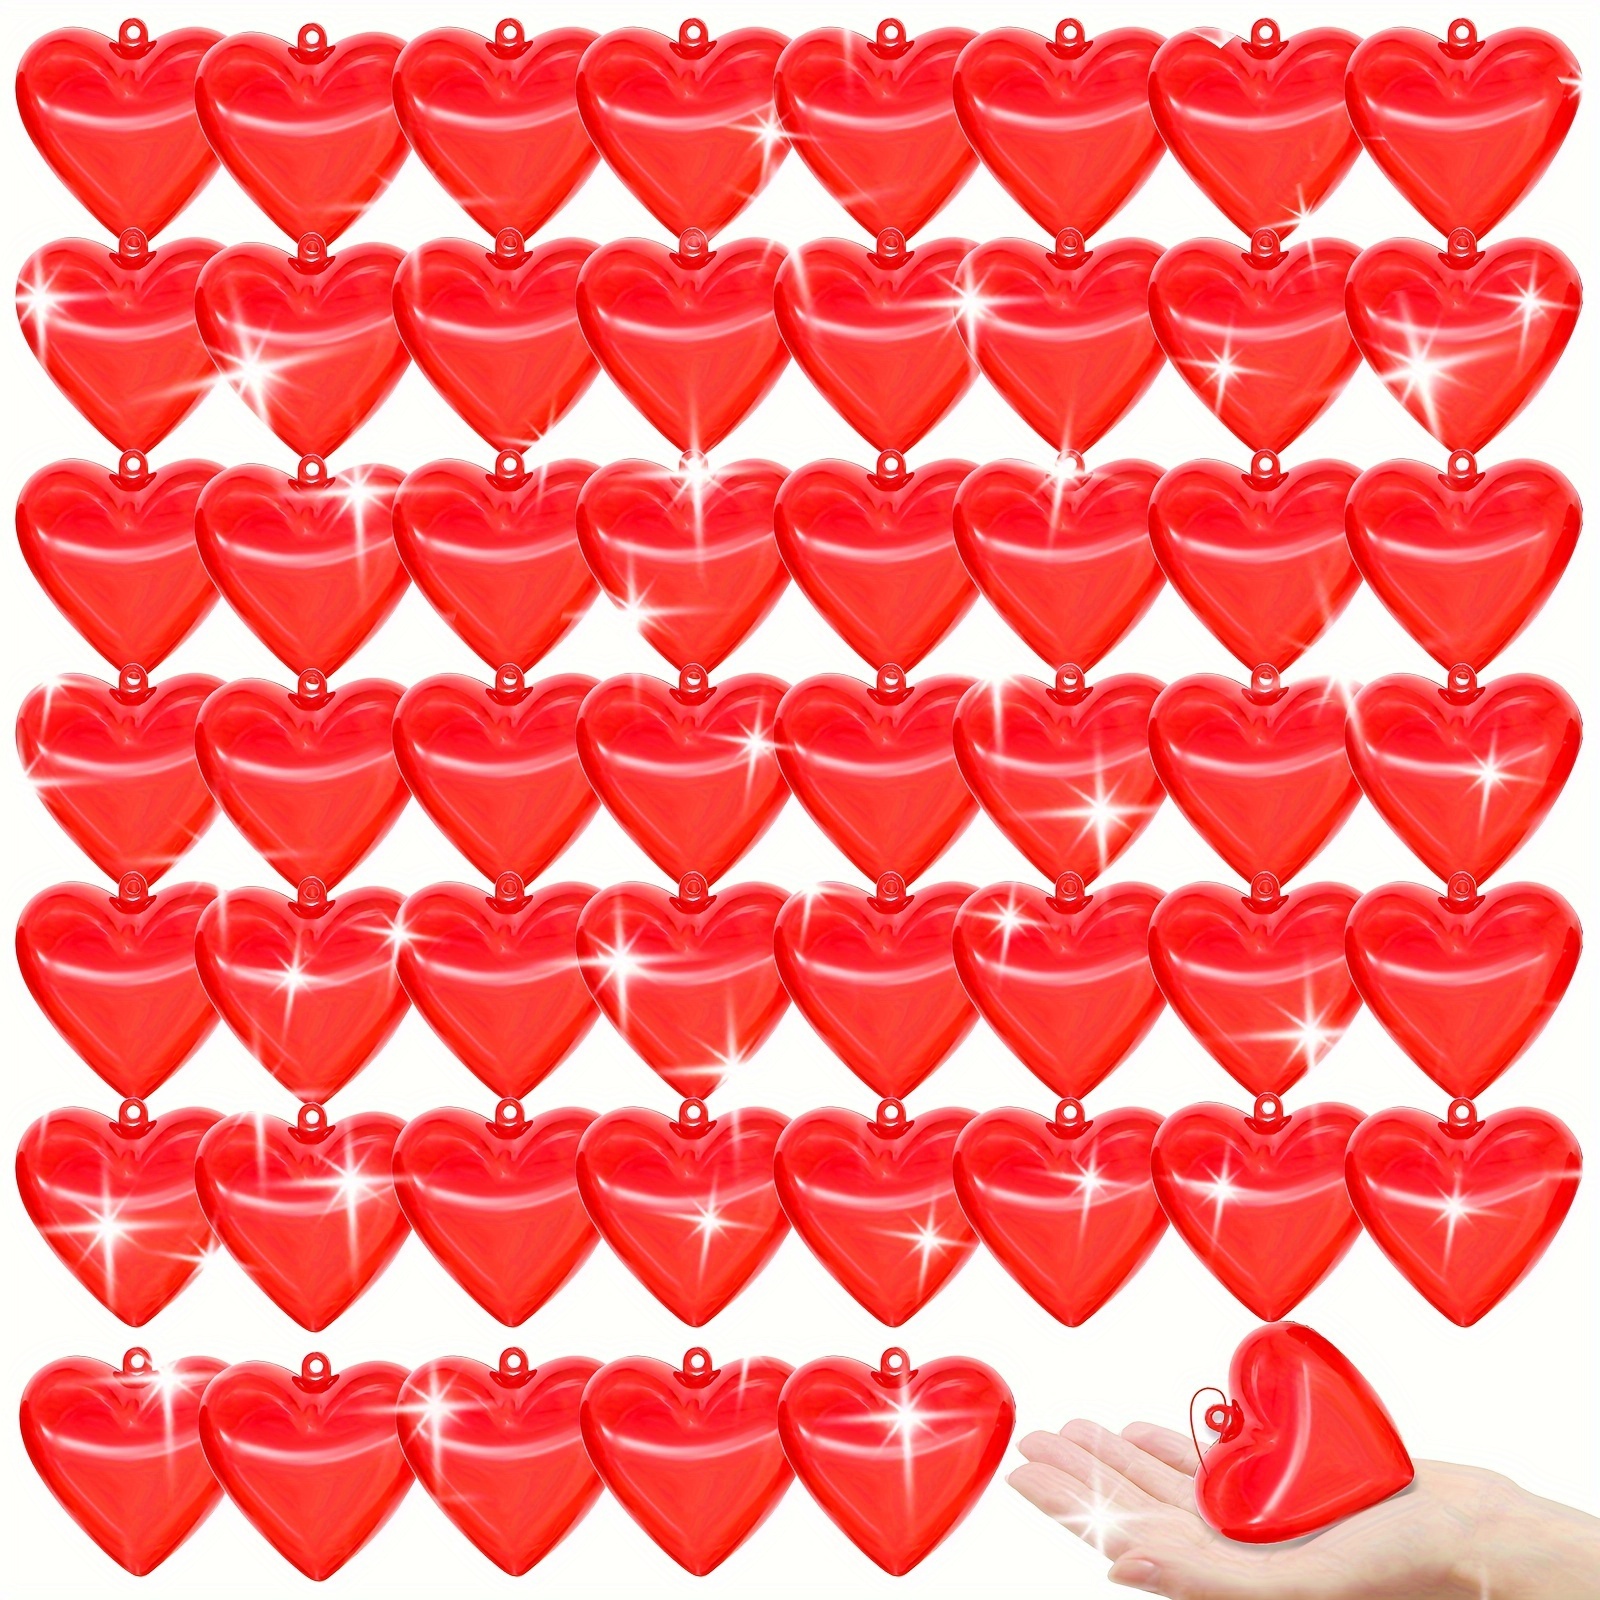 10 DIY Conversation Hearts Decorations